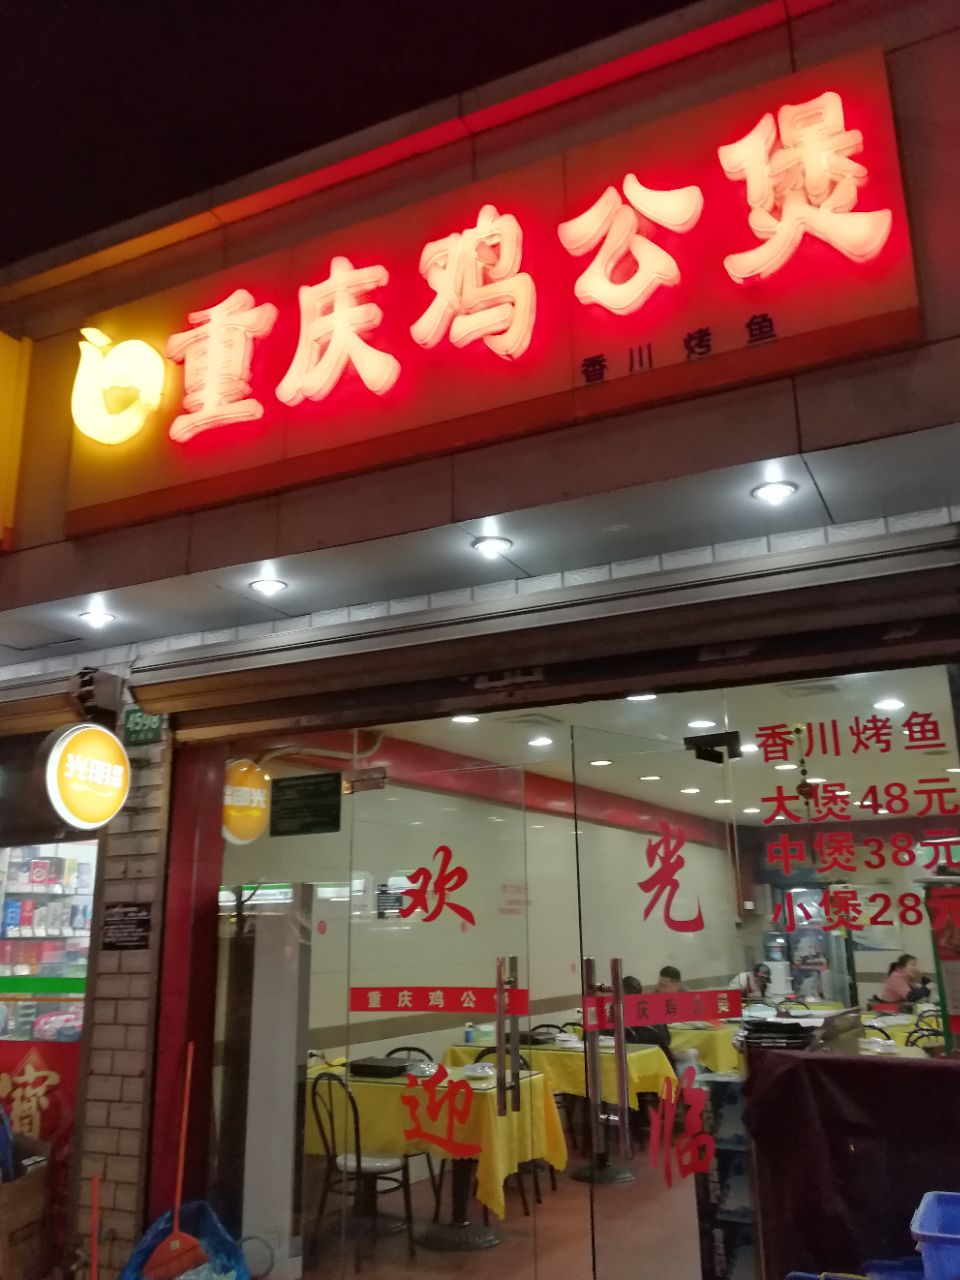 2022重庆鸡公煲(南车站路店)美食餐厅,择,先是一煲鸡肉,边烧边